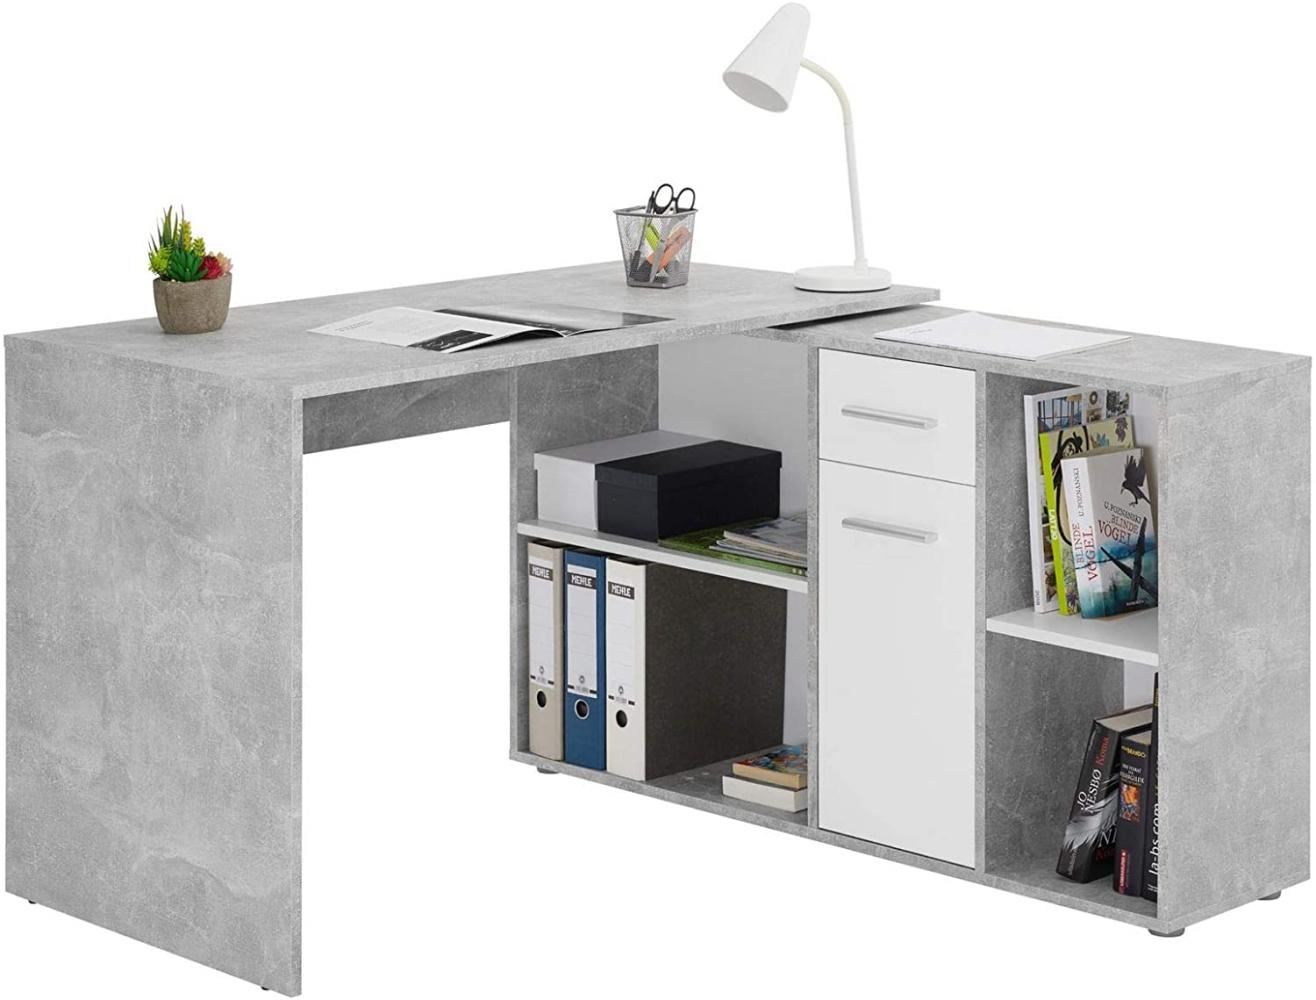 CARO-Möbel Eckschreibtisch Diego mit Regal, moderner Bürotisch für das Homeoffice, Computertisch in Trendiger Betonoptik Bild 1